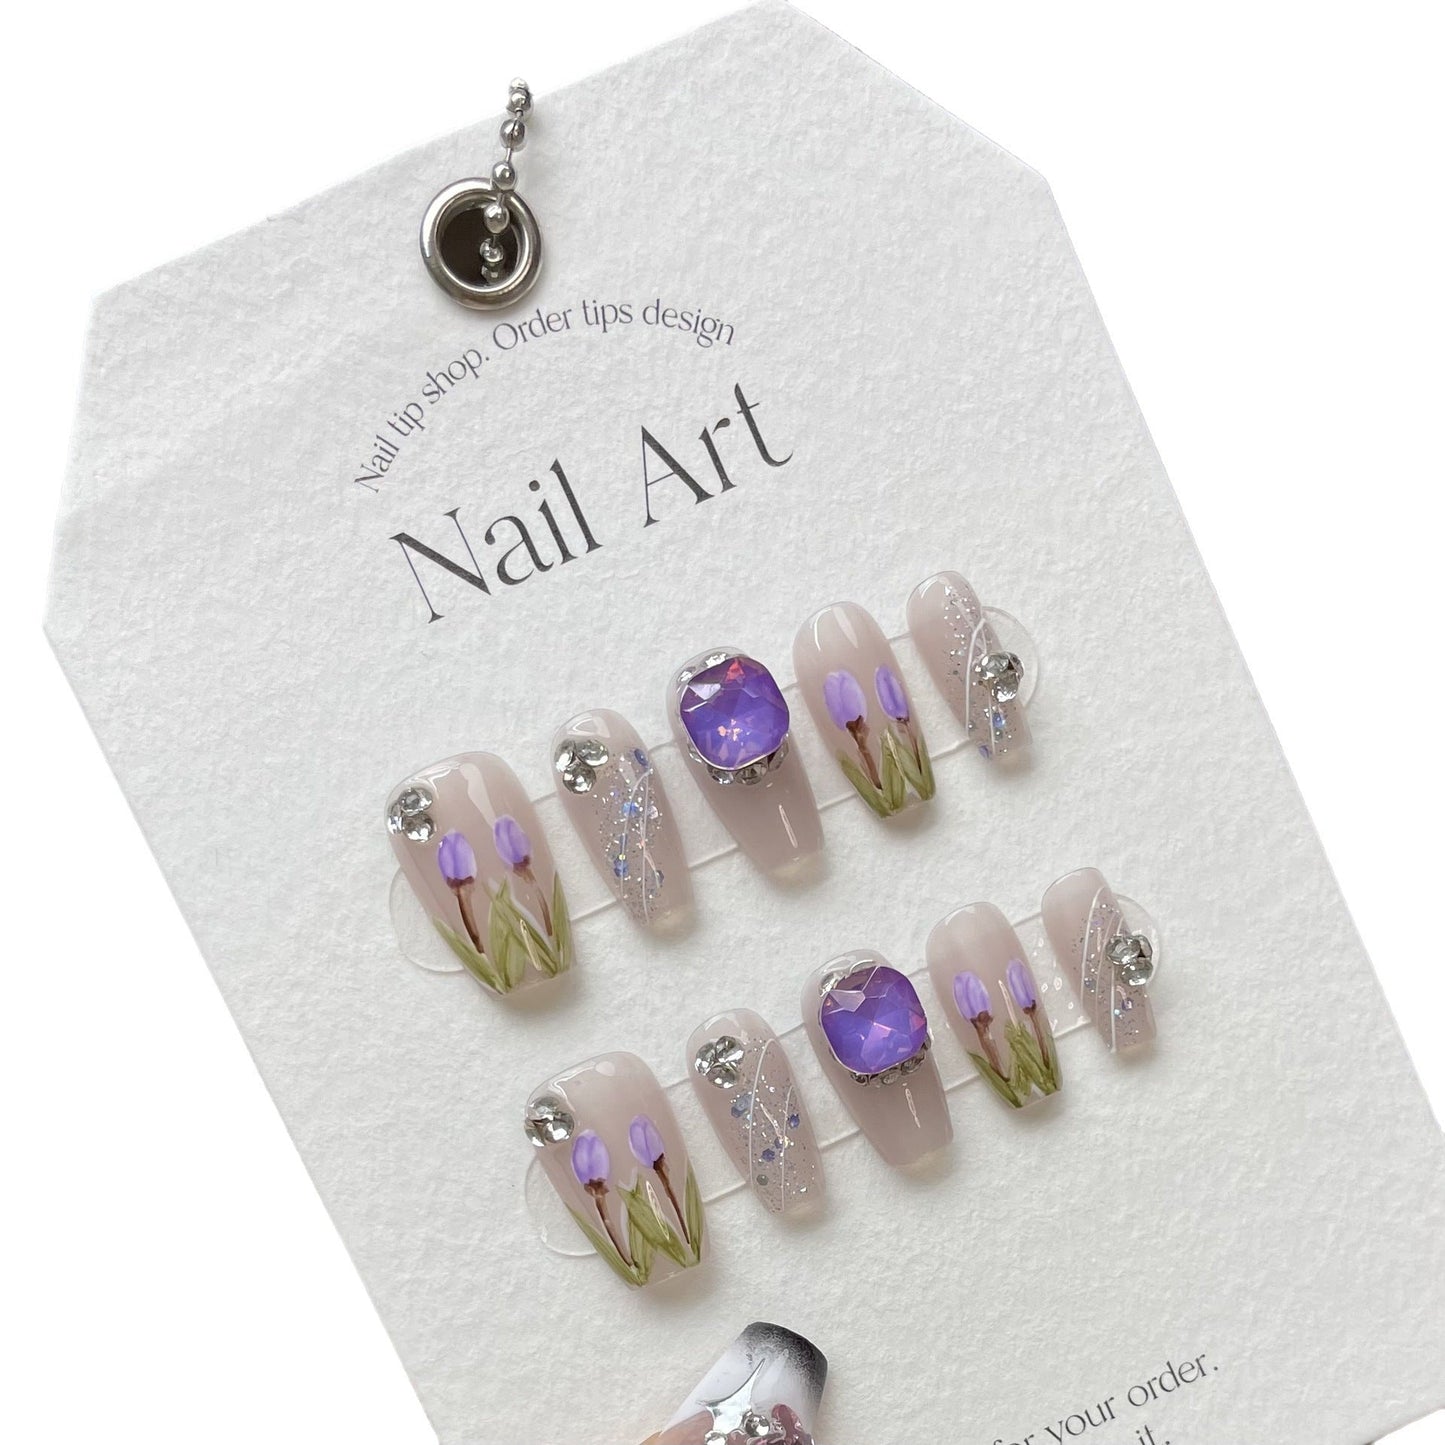 872 tulpstijl press-on-nagels 100% handgemaakte kunstnagels paars